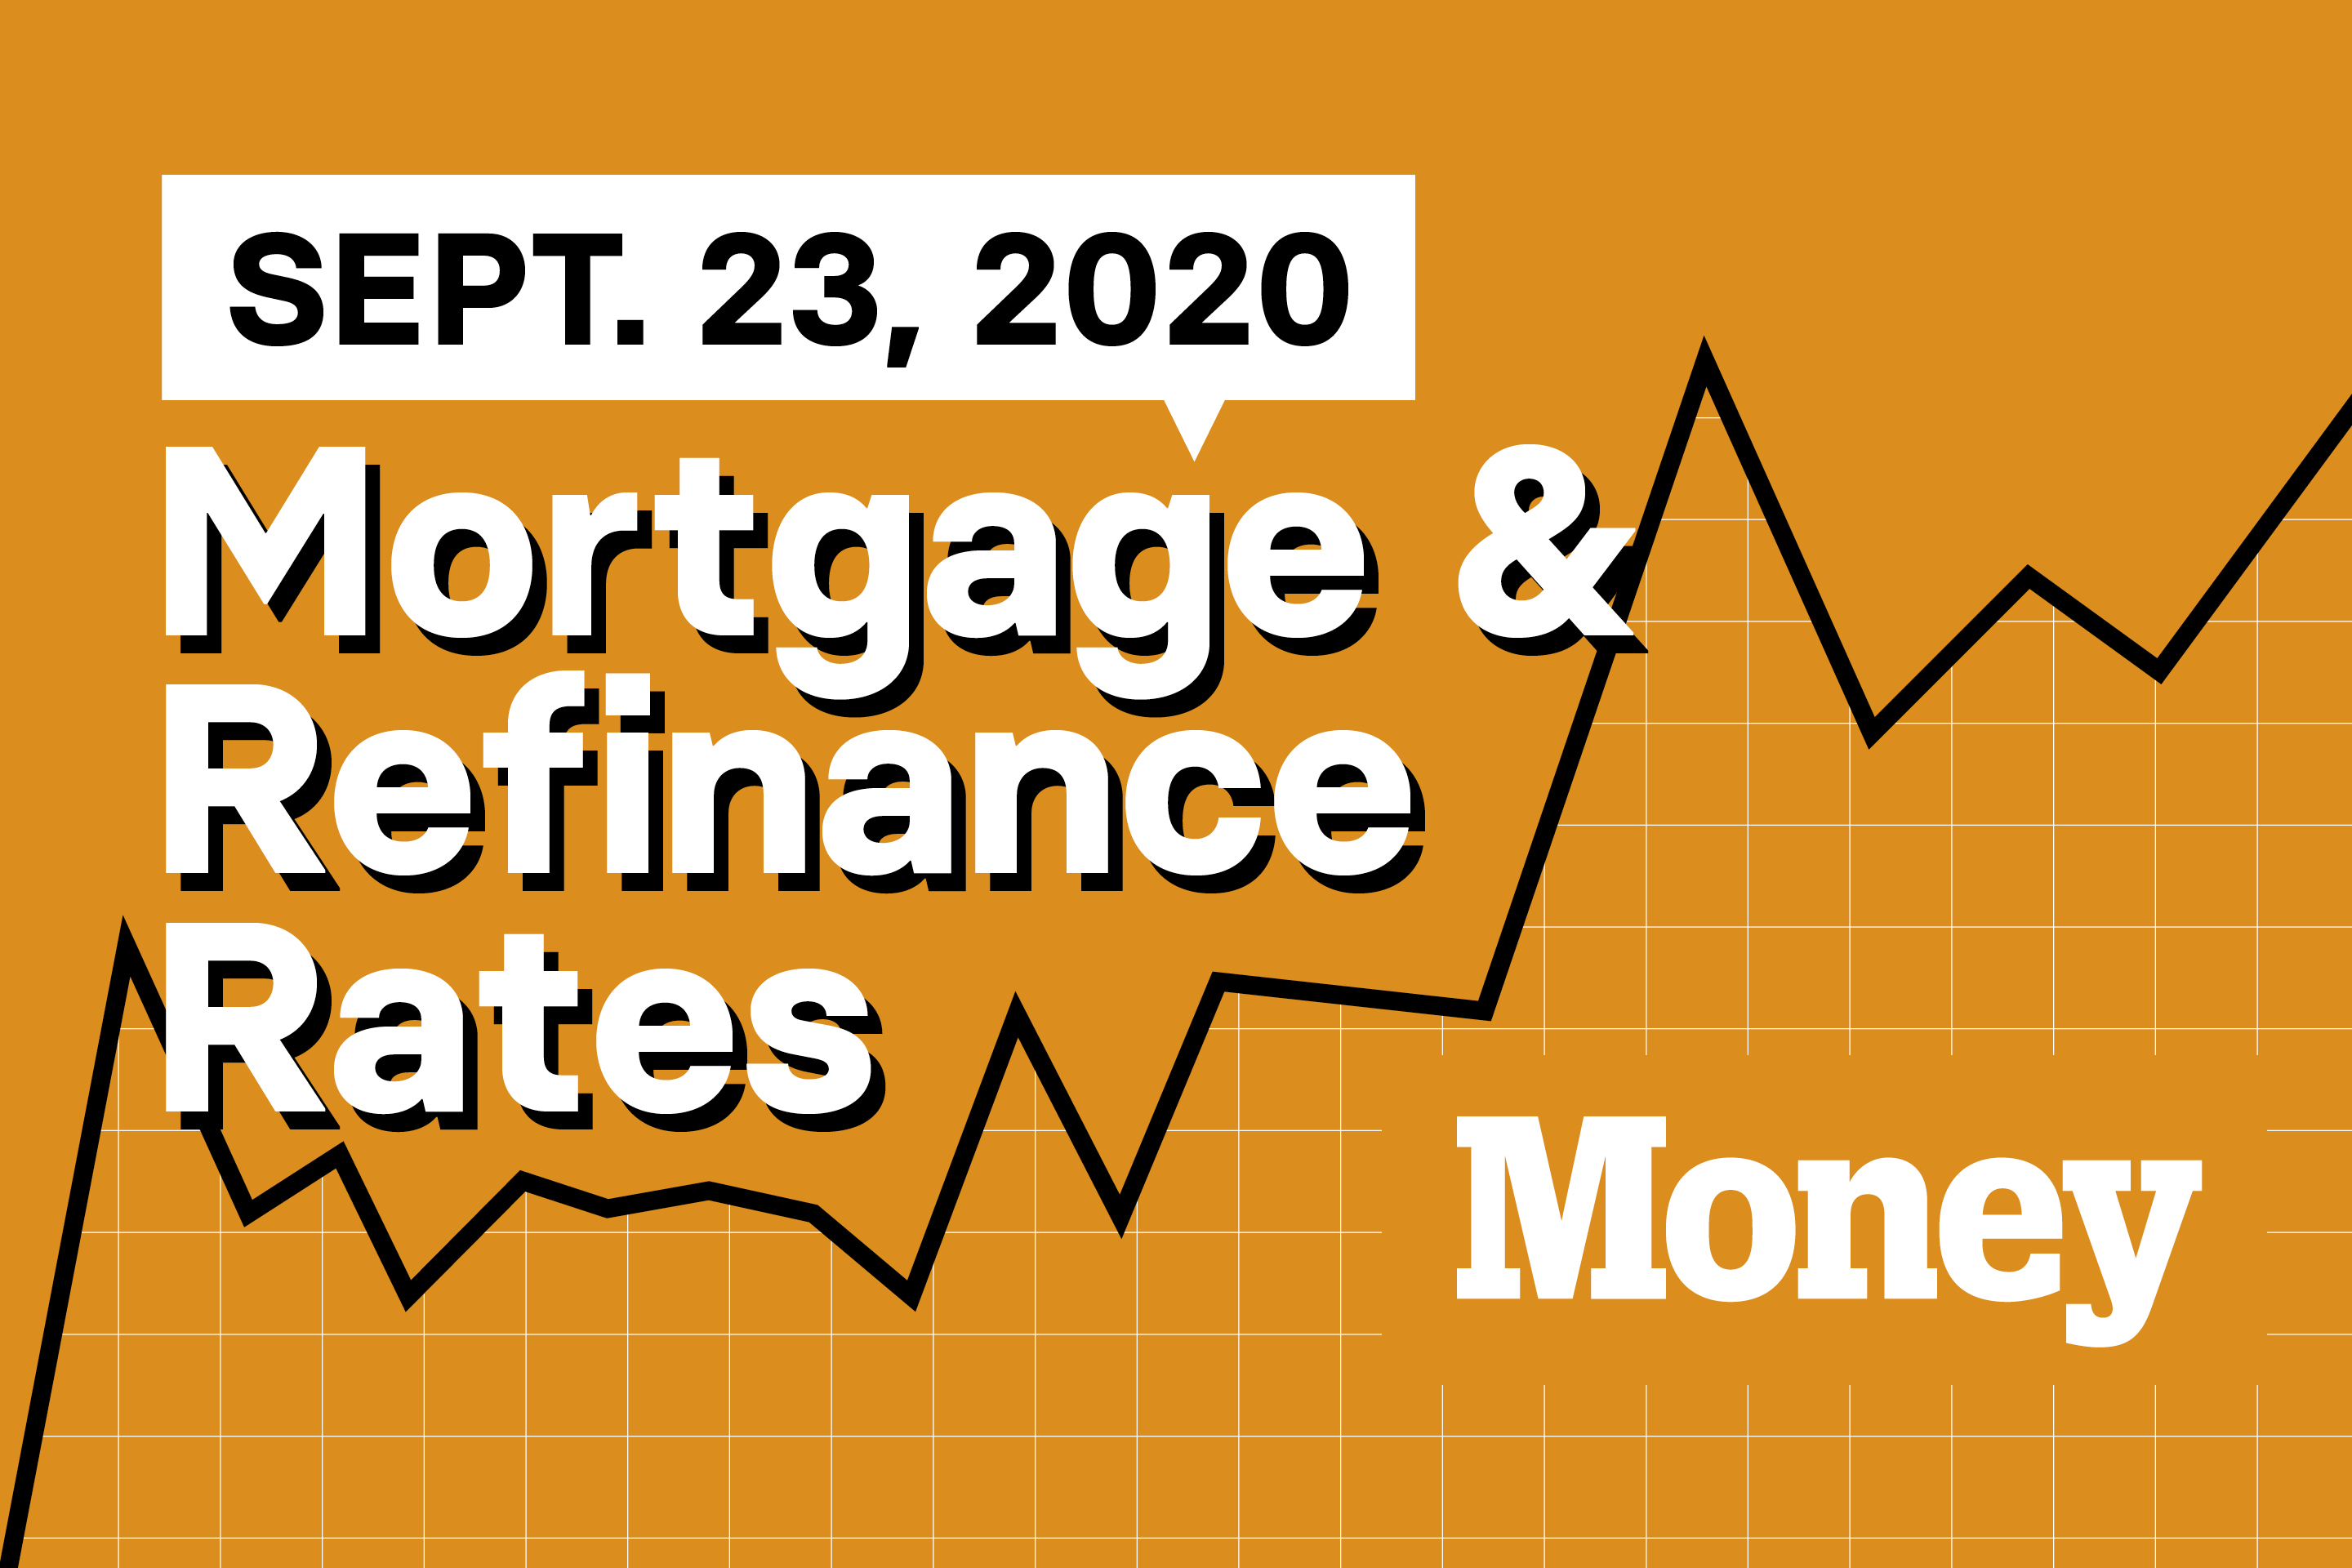 compare mortgage rates calculator refinance